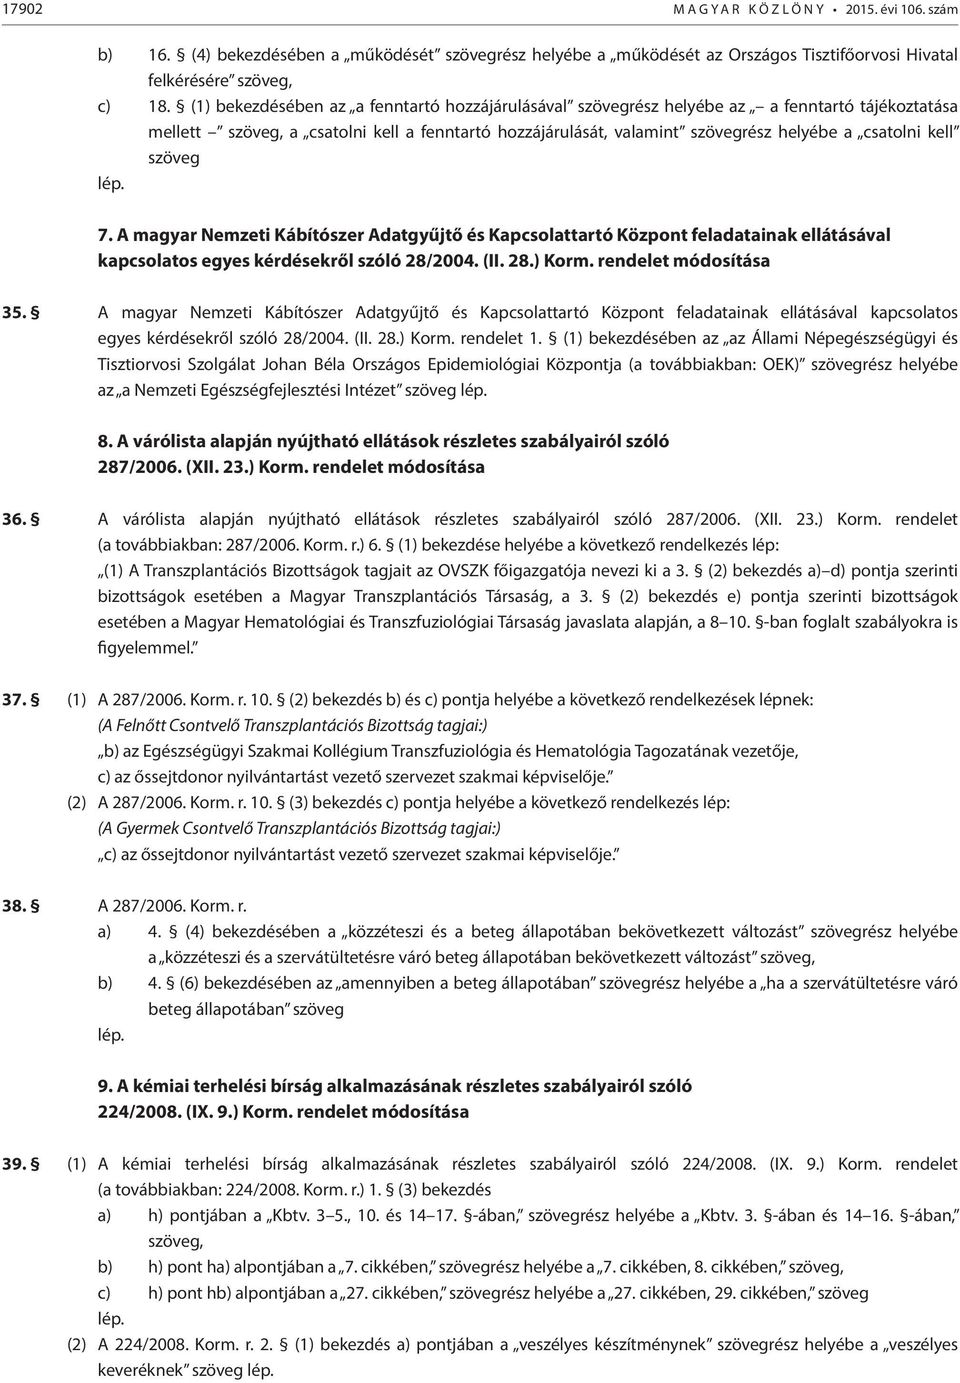 kell szöveg lép. 7. A magyar Nemzeti Kábítószer Adatgyűjtő és Kapcsolattartó Központ feladatainak ellátásával kapcsolatos egyes kérdésekről szóló 28/2004. (II. 28.) Korm. rendelet módosítása 35.